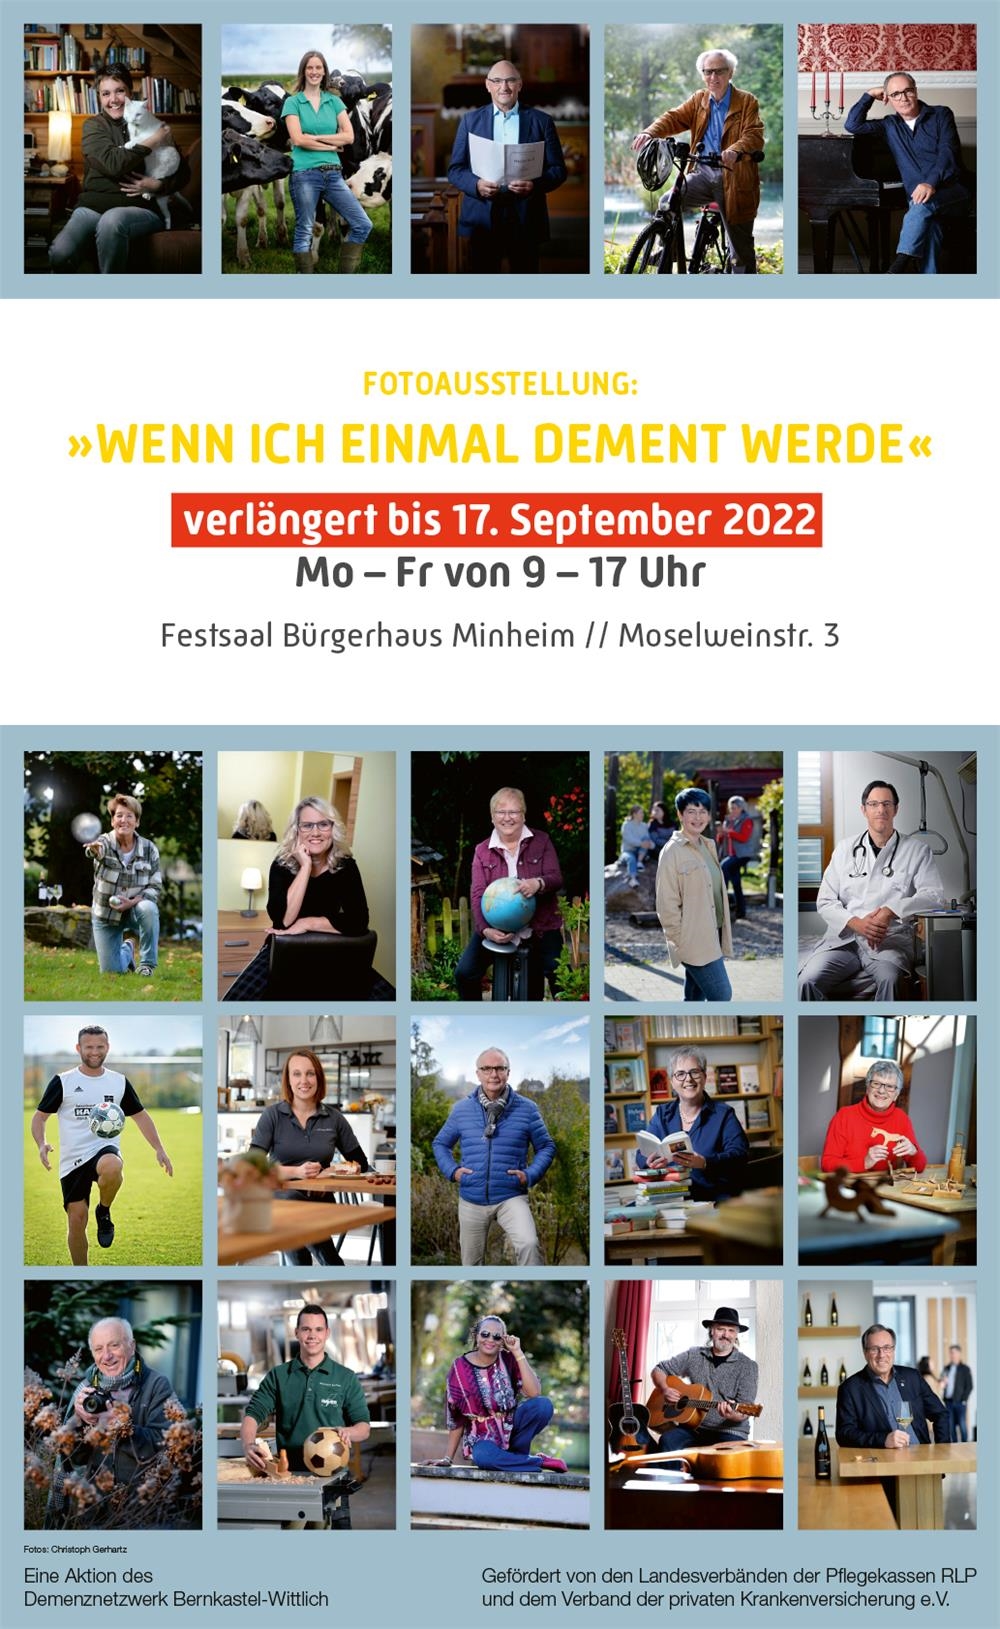 Fotoausstellung "Wenn ich einmal dement werde" Minheim 31.08. bis 17.09.